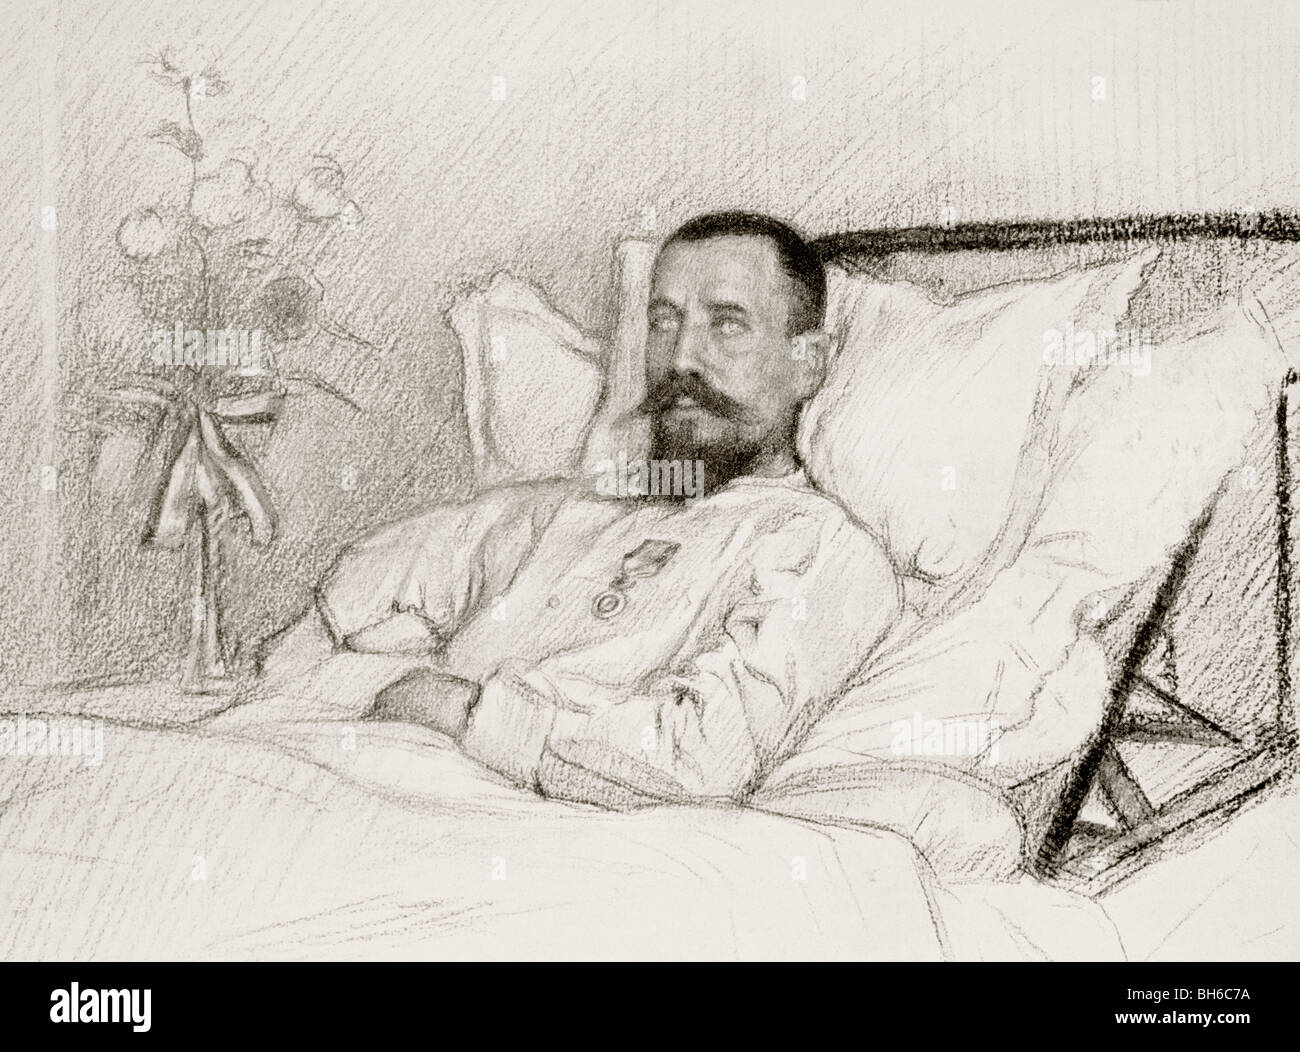 Generale Francese Henri Gouraud recuperando in ospedale dopo aver perso il suo braccio destro nella campagna dei Dardanelli, 1915. Foto Stock